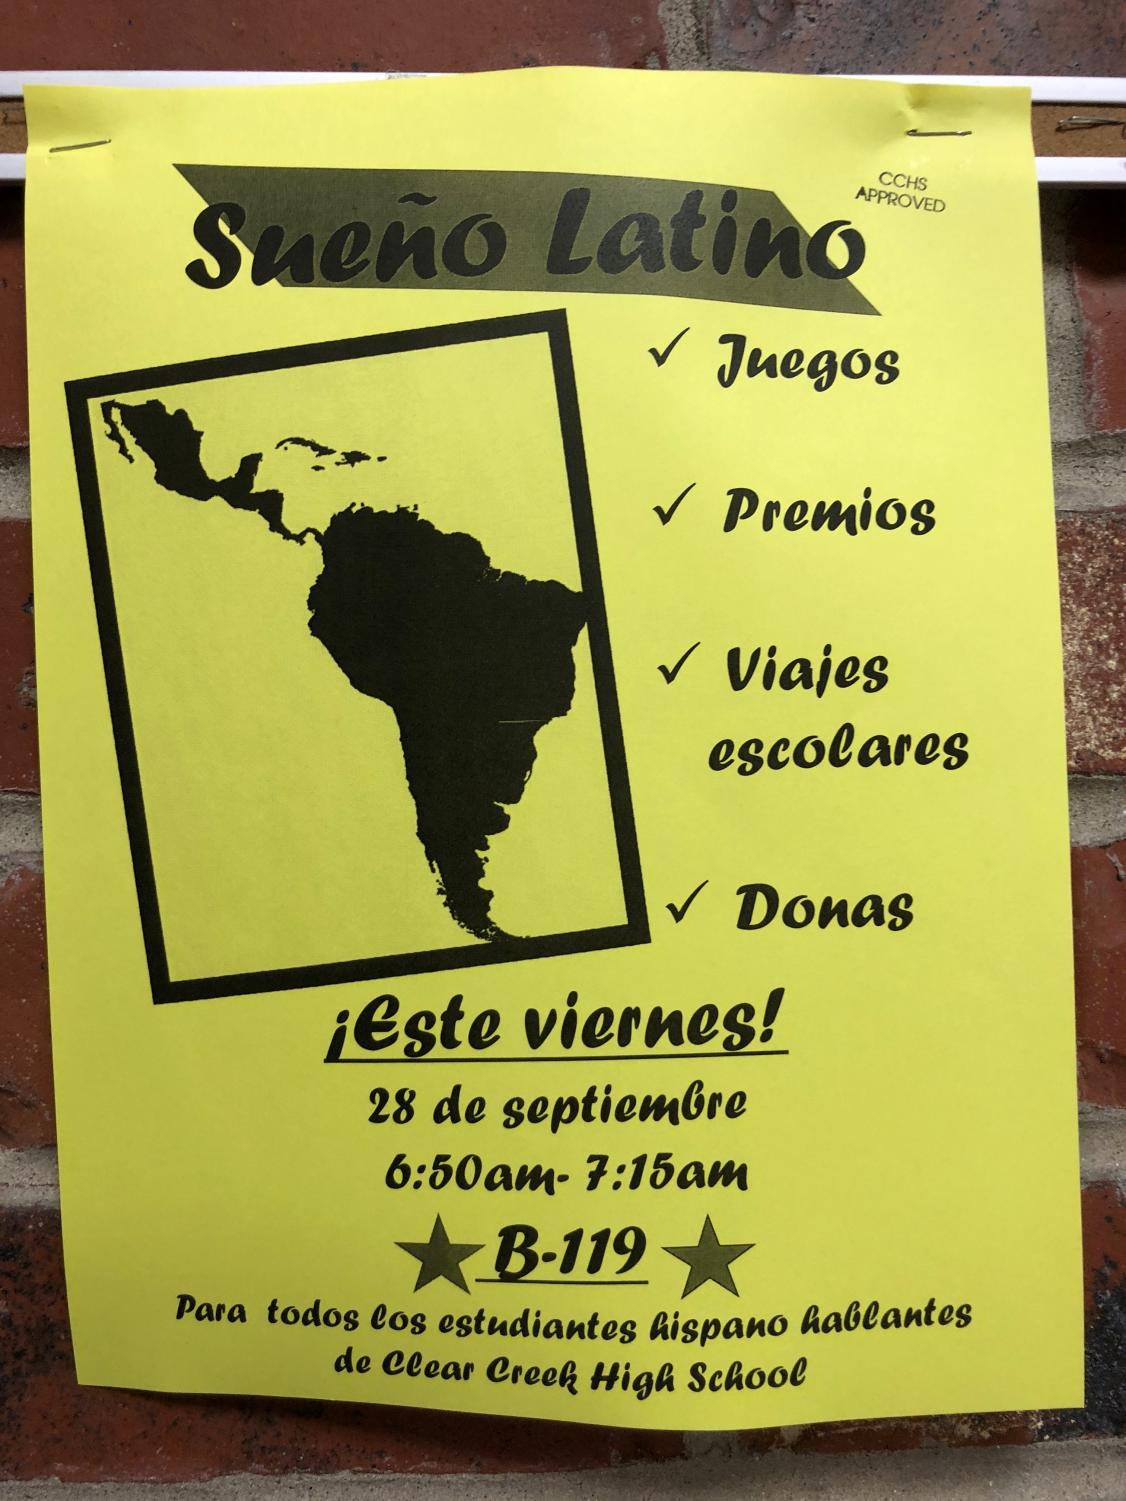 Sueno Latino Club